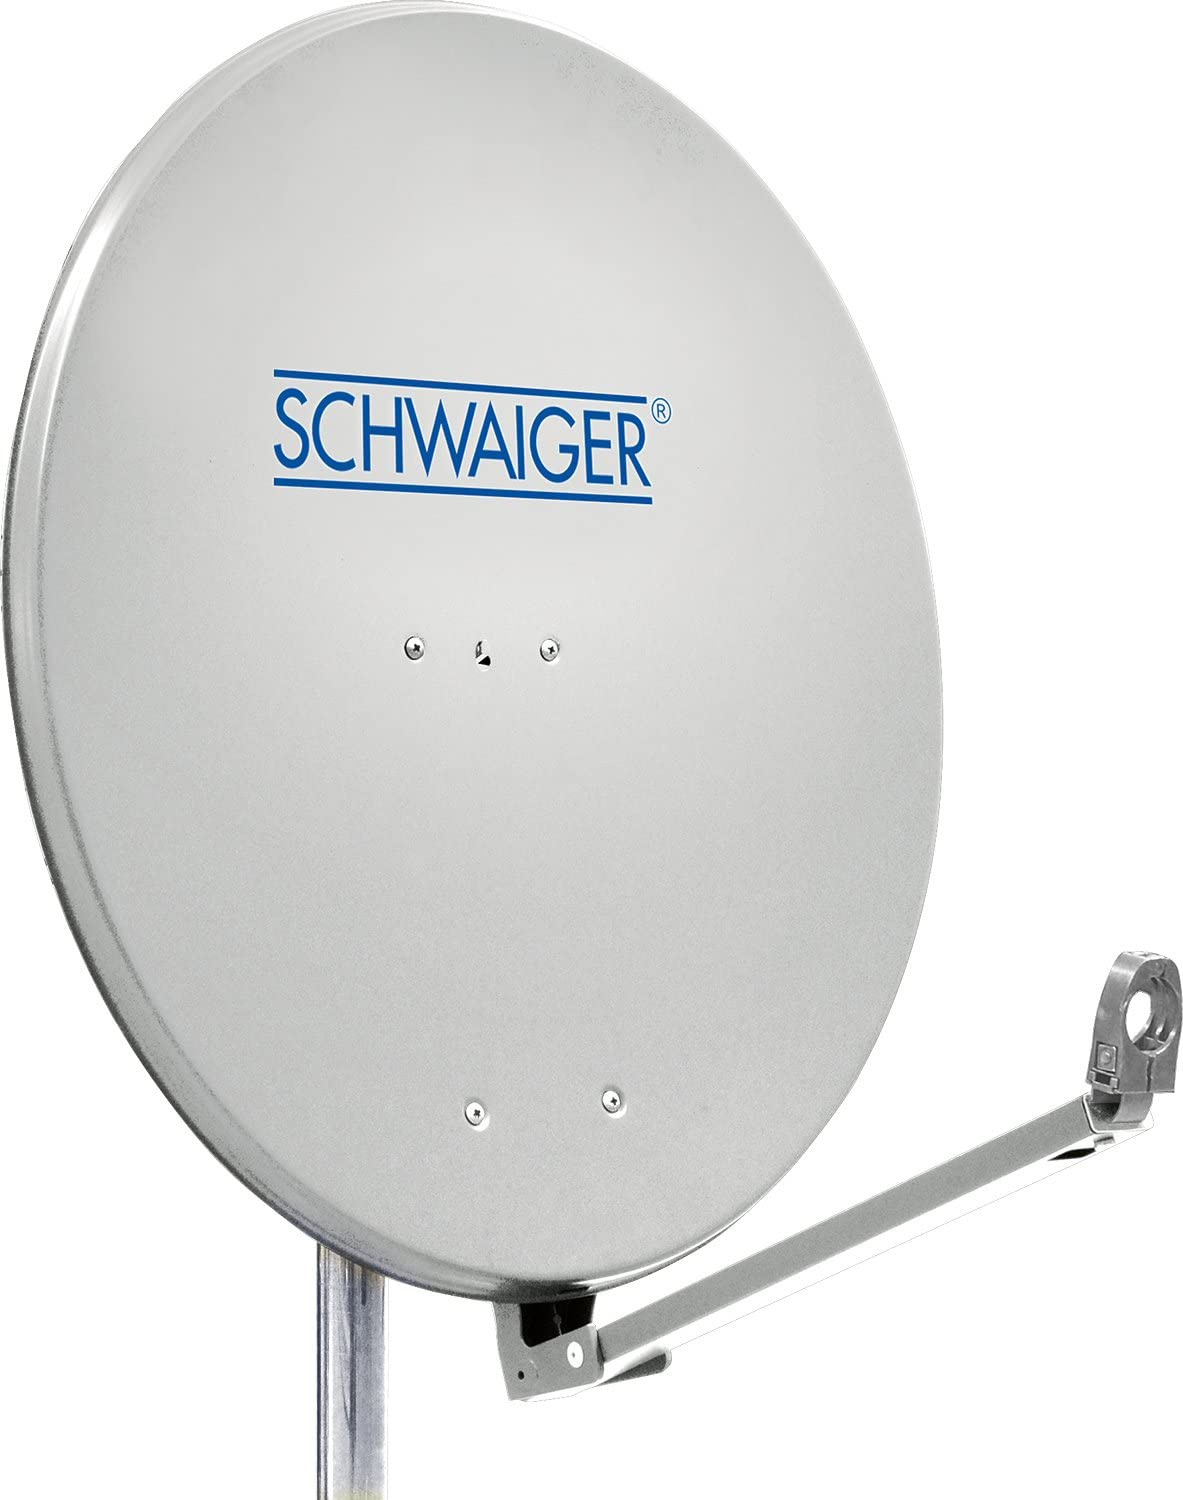 SCHWAIGER -SPI910.0- Aluminium Offset (Ø cm) Antenne 88